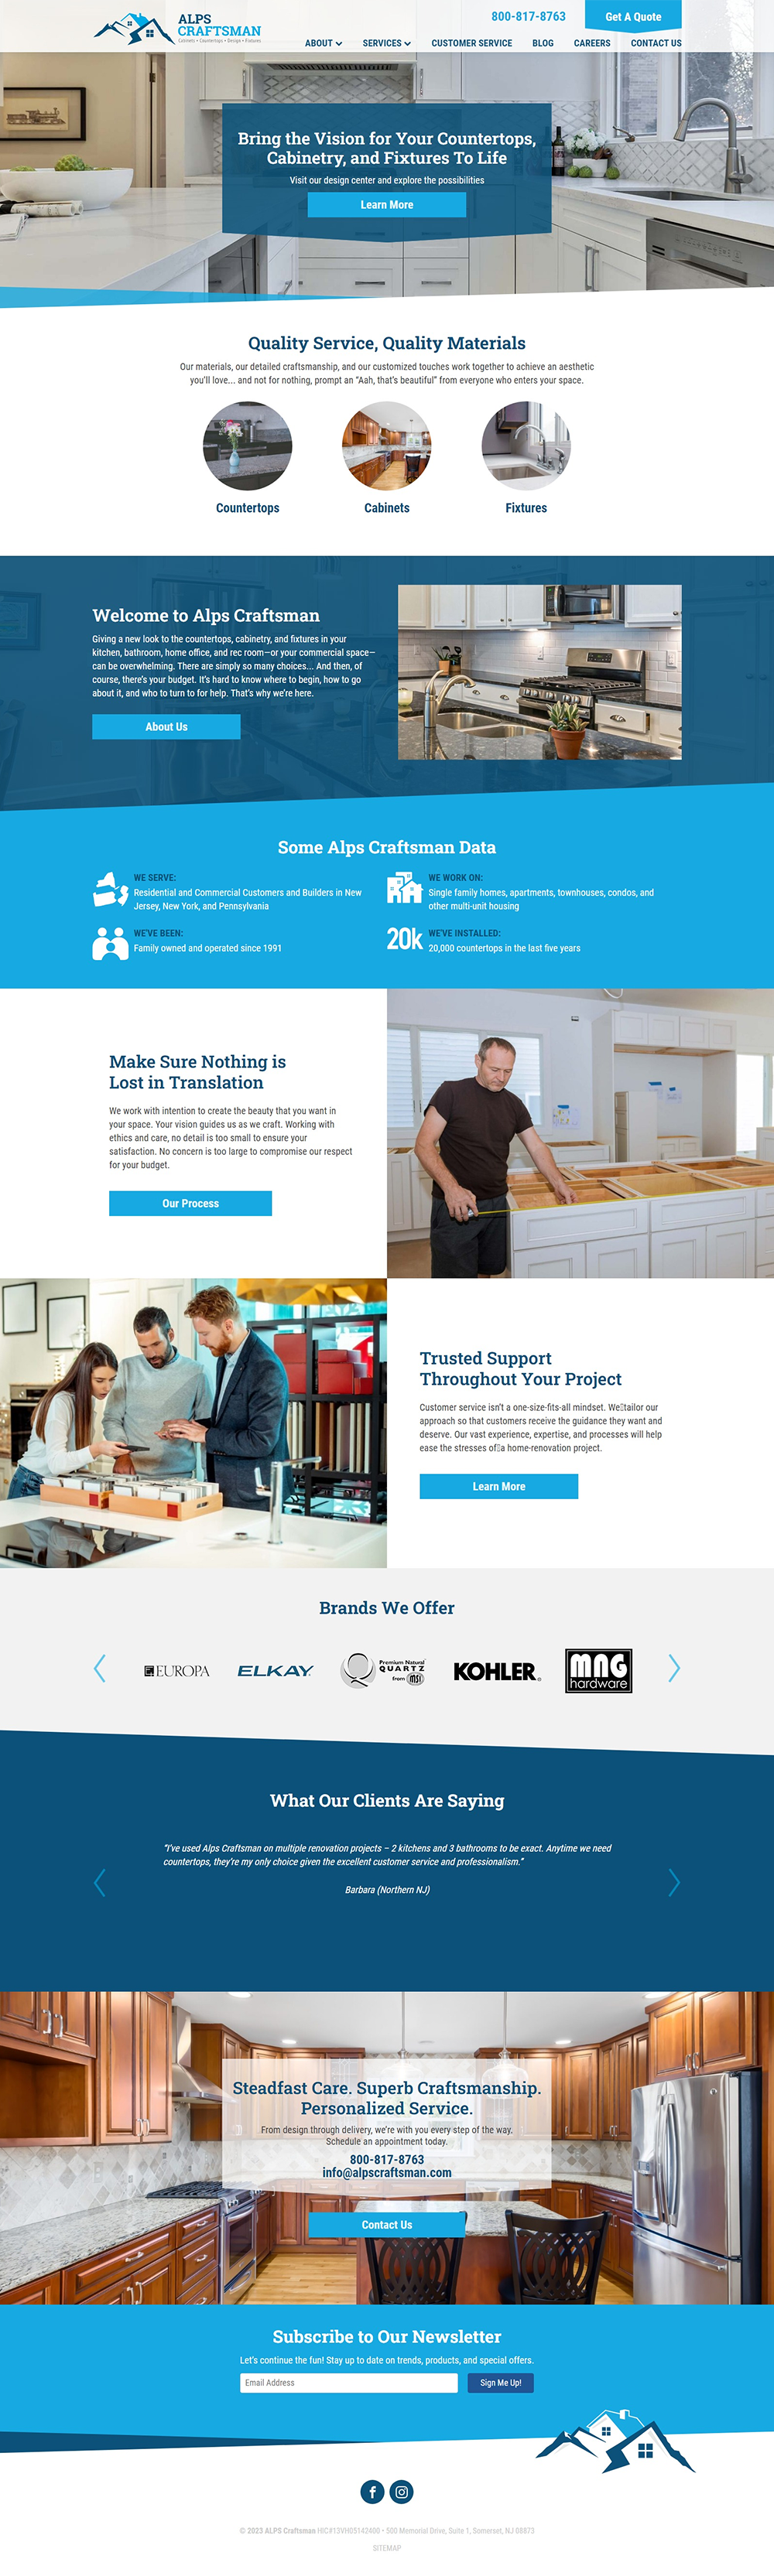 alps craftsman countertop cabinet Website Design